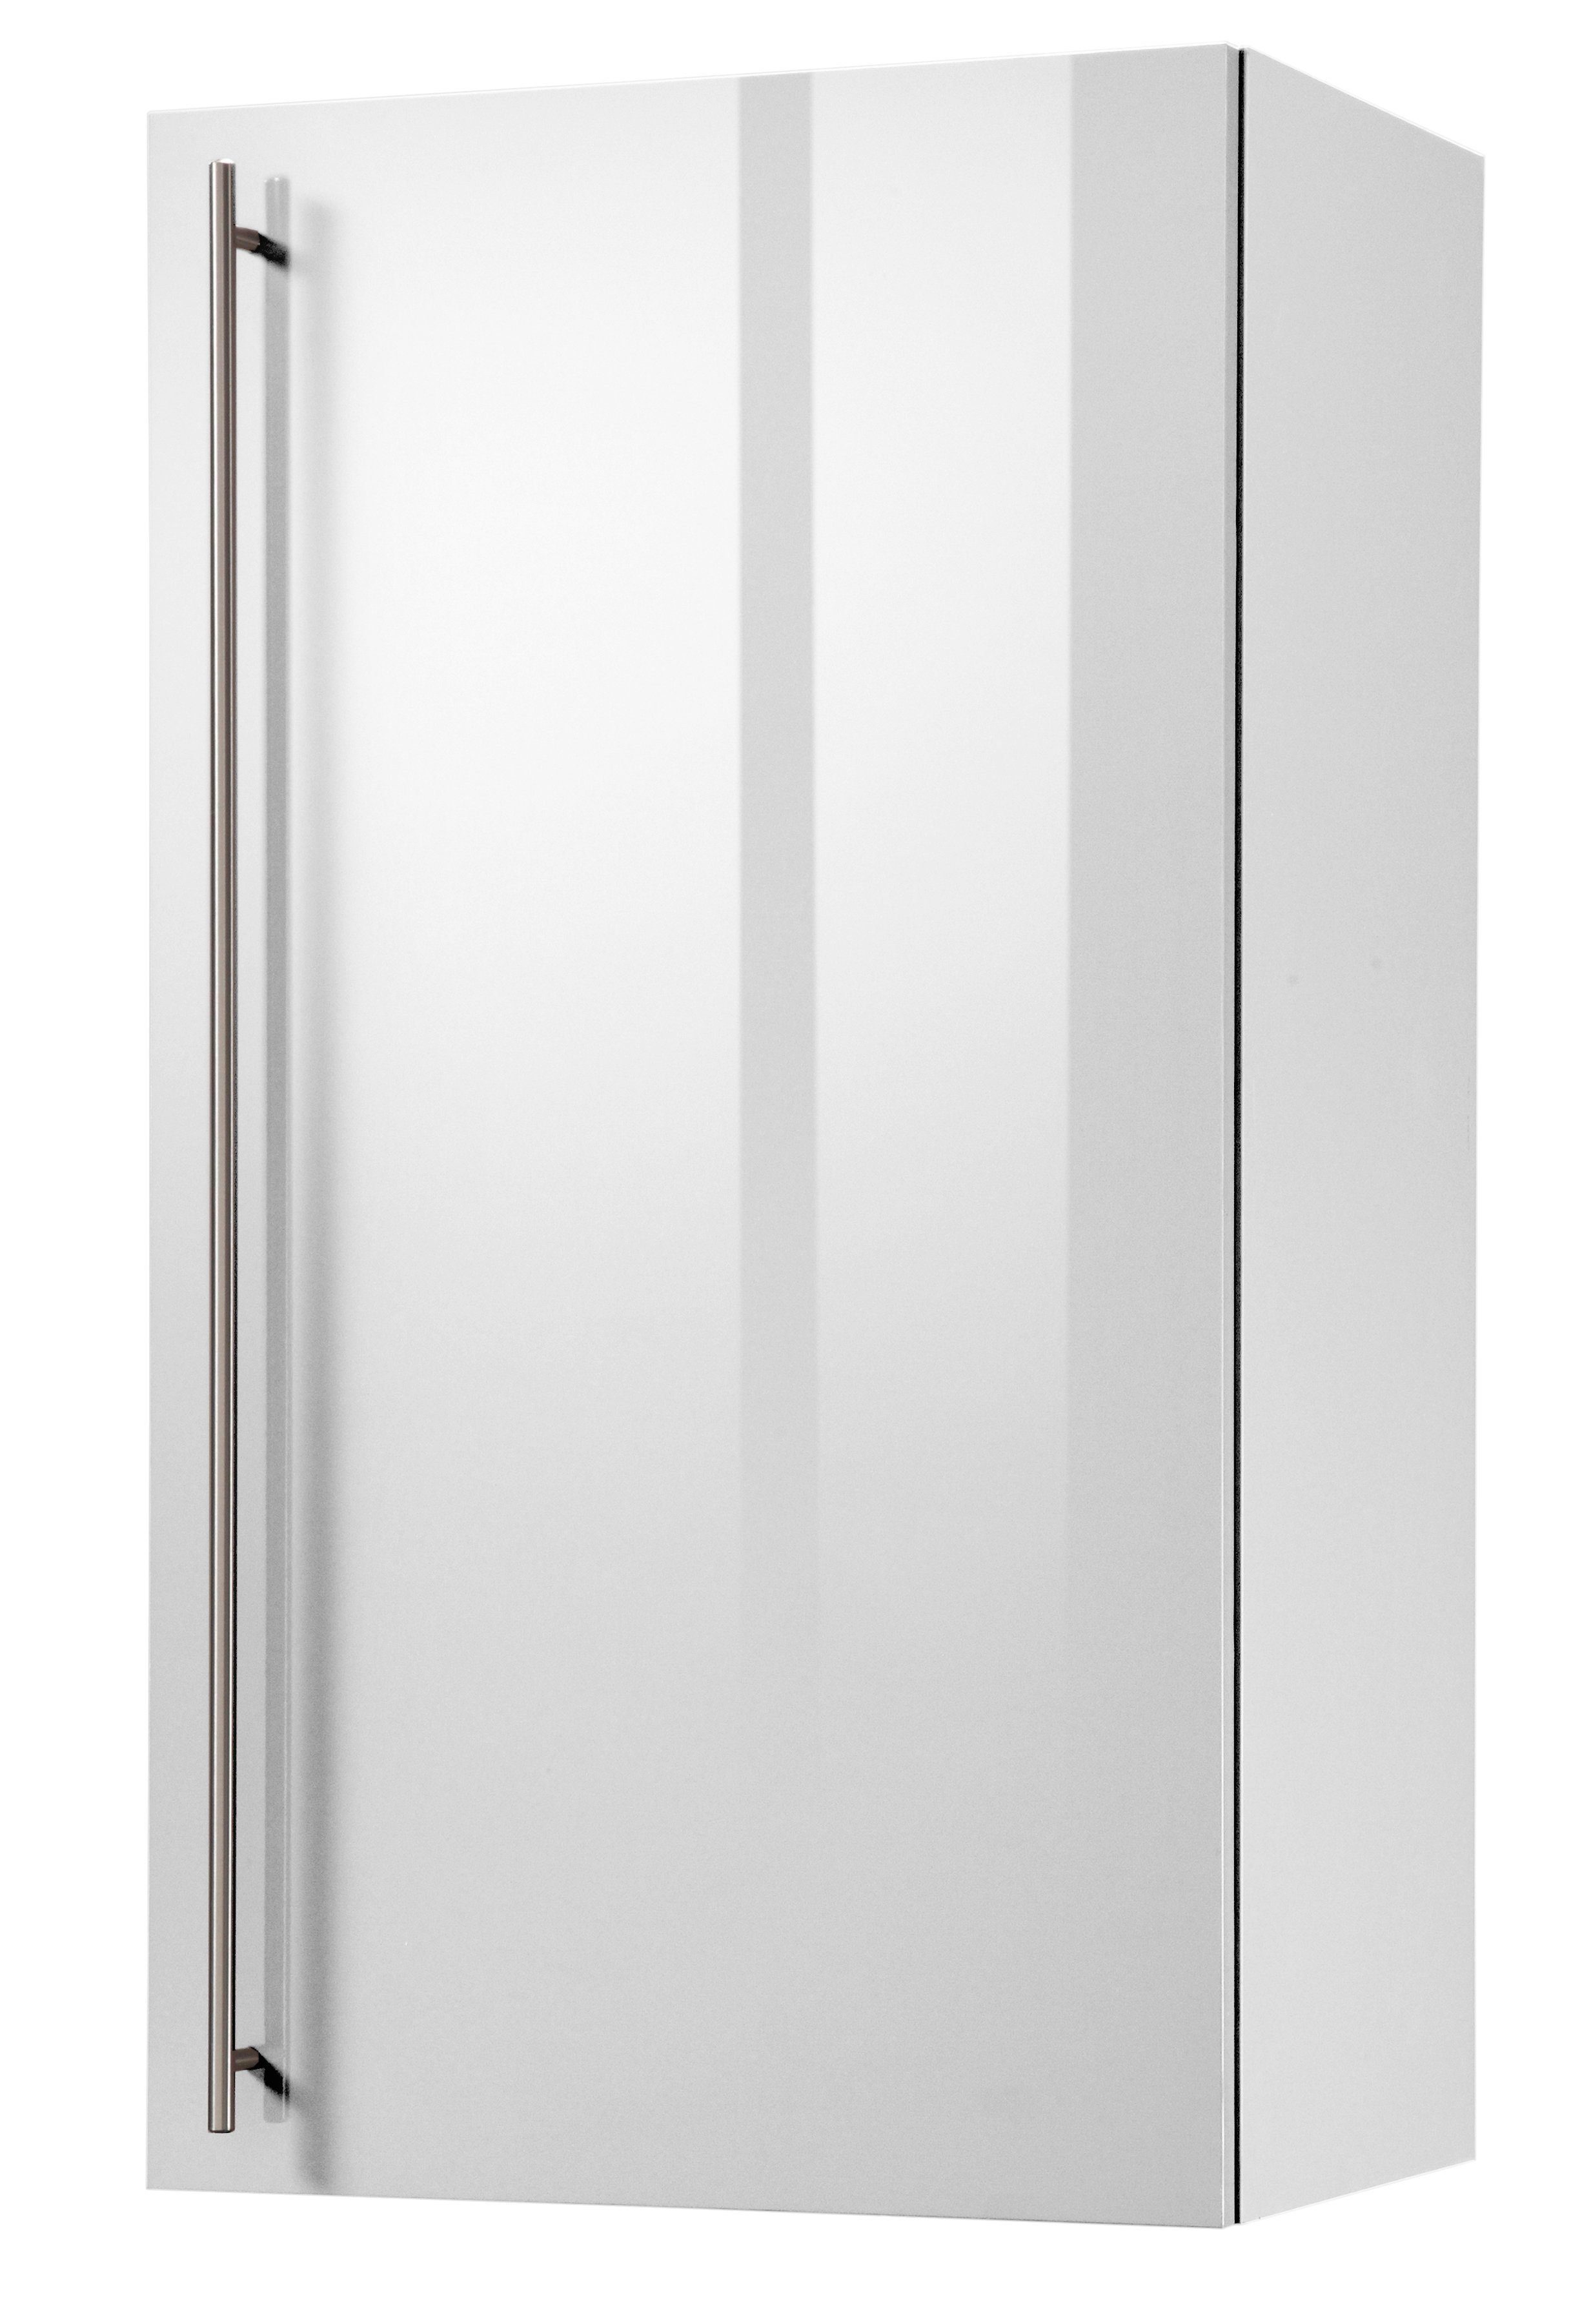 Weiß / Akazie 50 cm breit 90 cm hoch Küchen-Glashängeschrank BARCELONA 